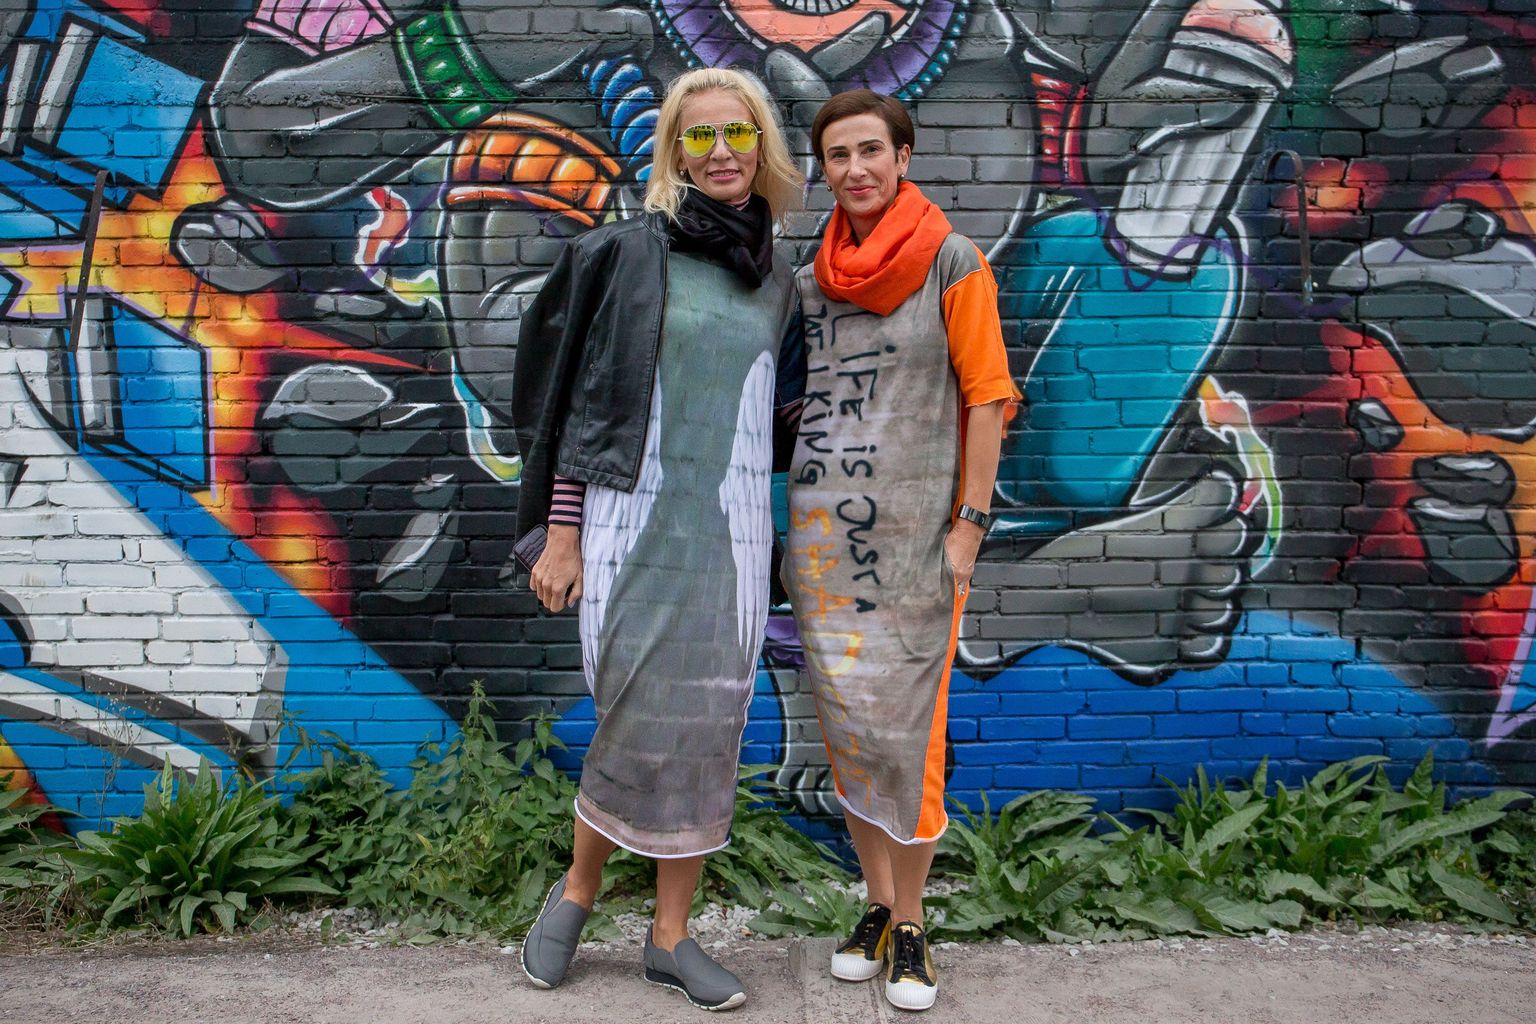 Grafitiingel ja tõupuhas tänavapoiss? Tegelikult tegusad kaunitarid  Kristina Ljadov ja Kristel Kurvits.